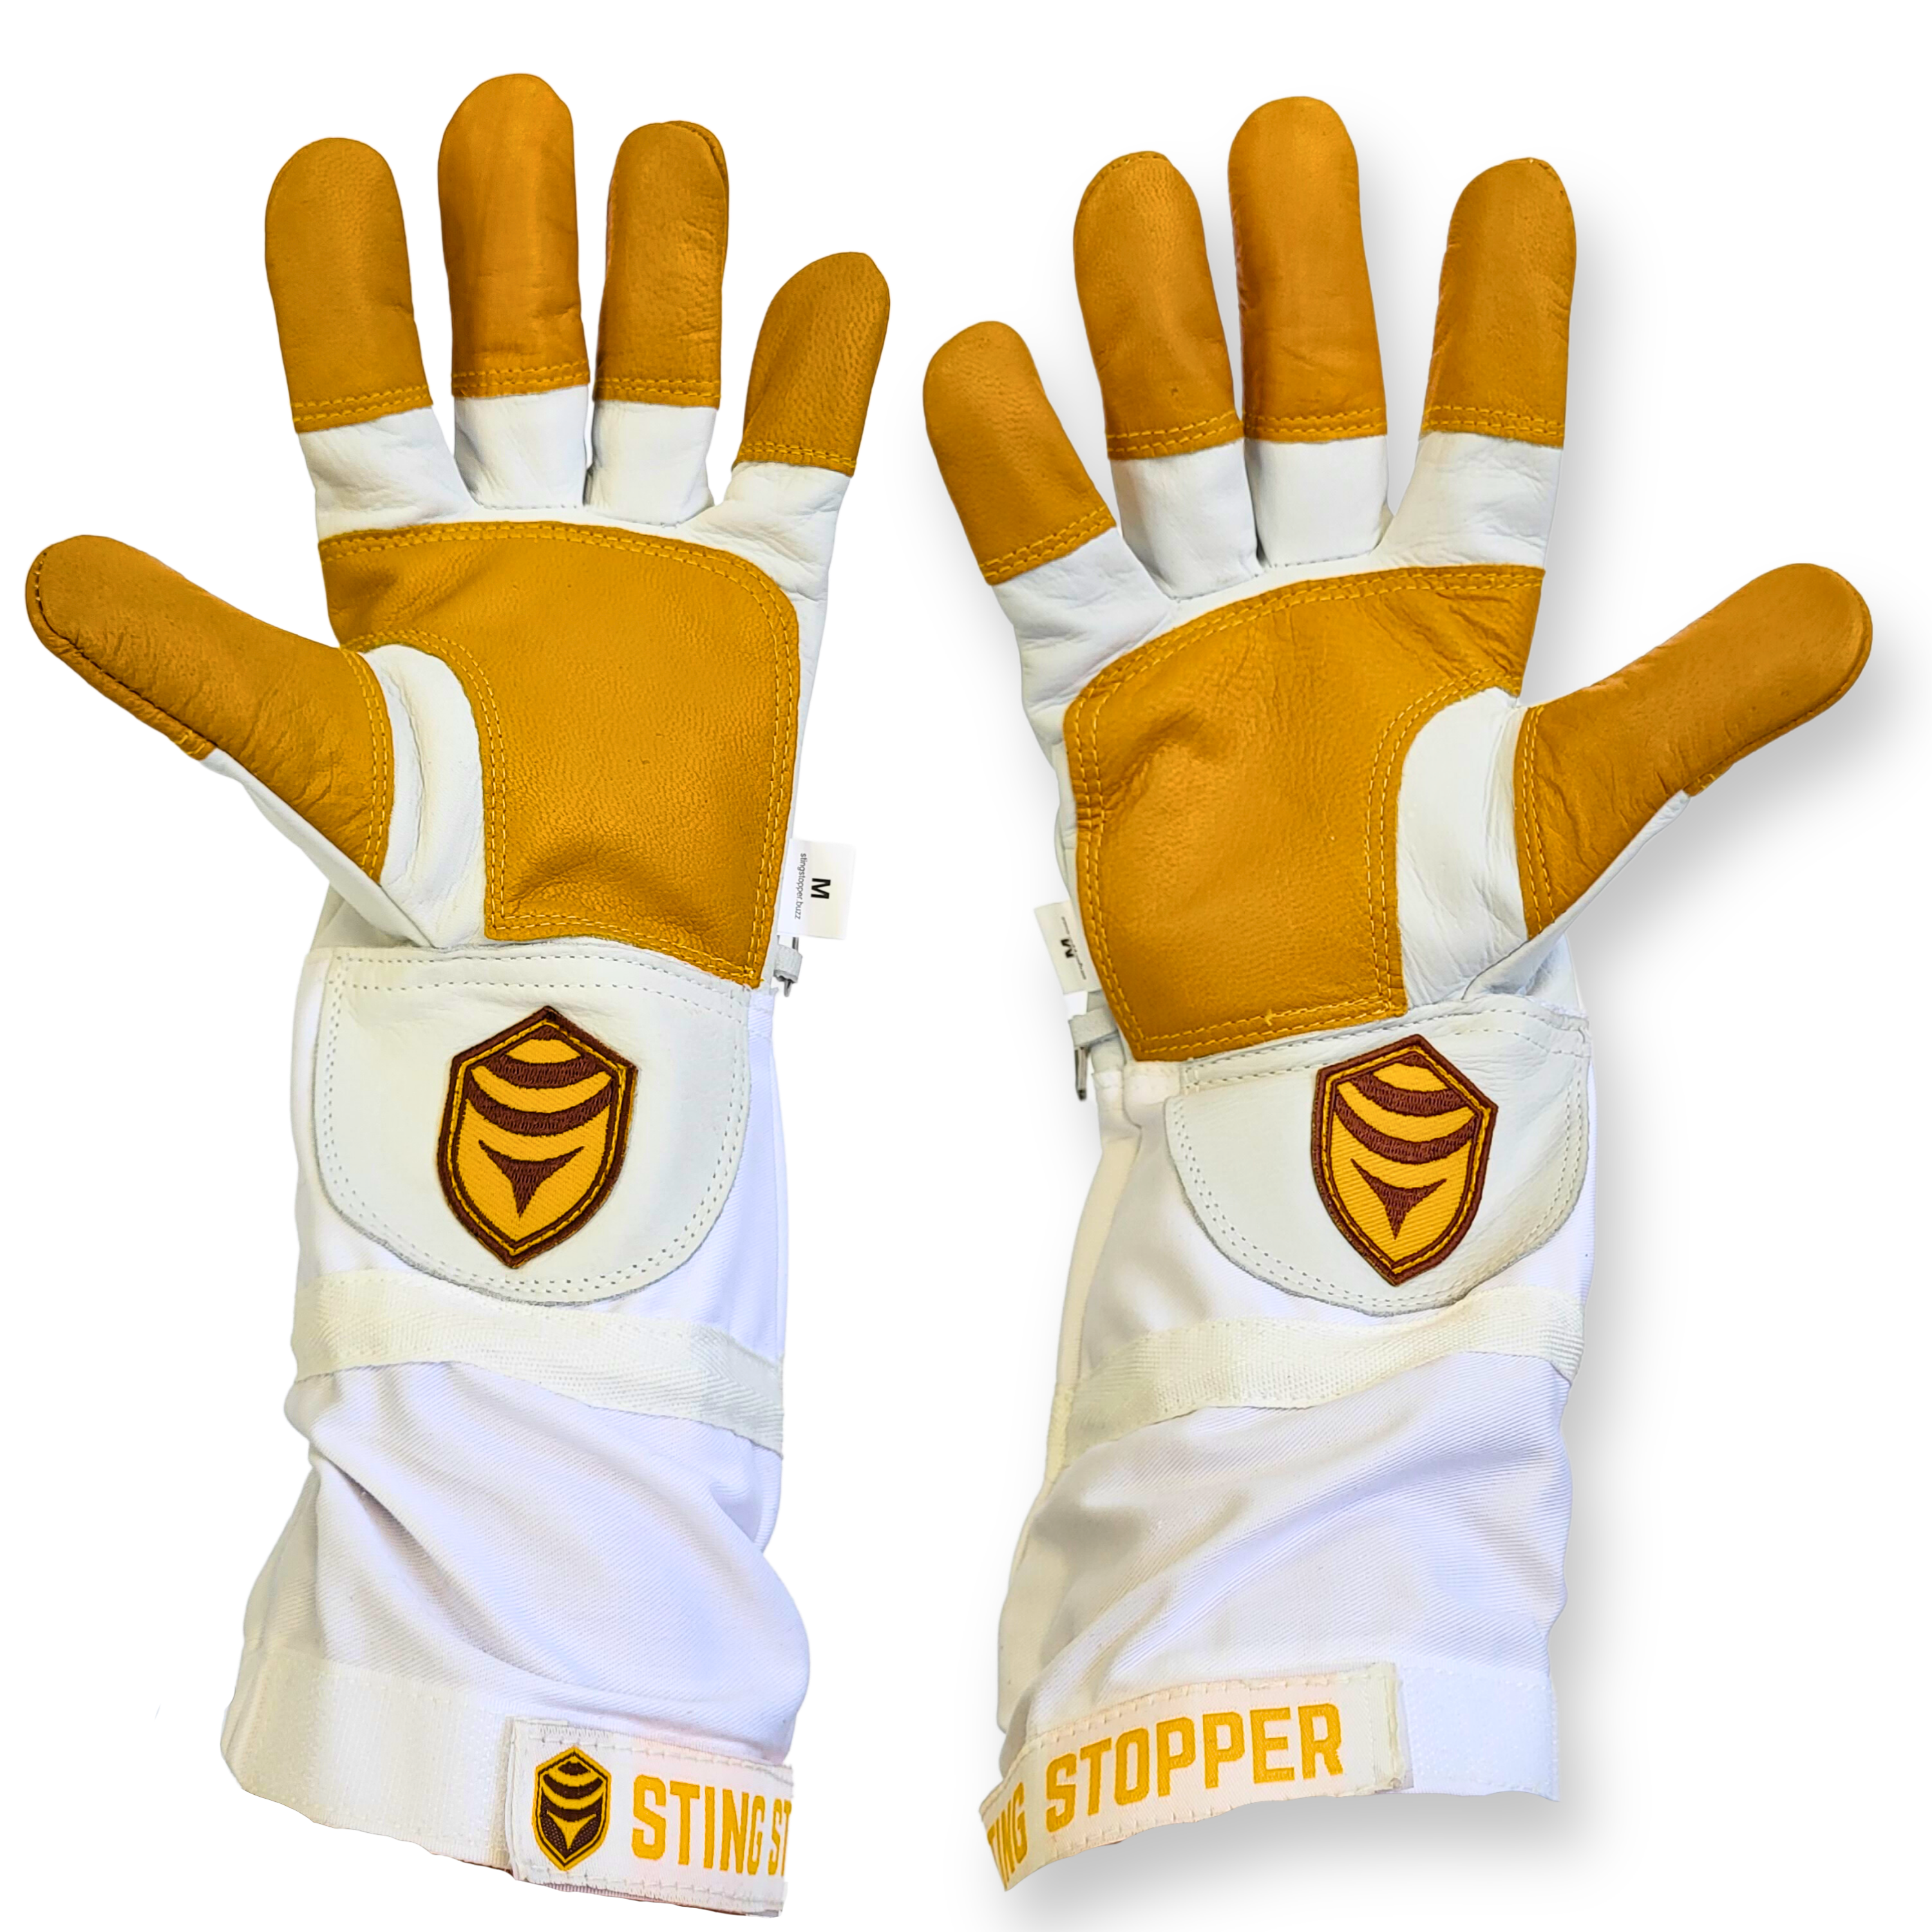 Sting Stopper Heavy Duty Goat Skin Beekeeping Gloves - Beekeeper